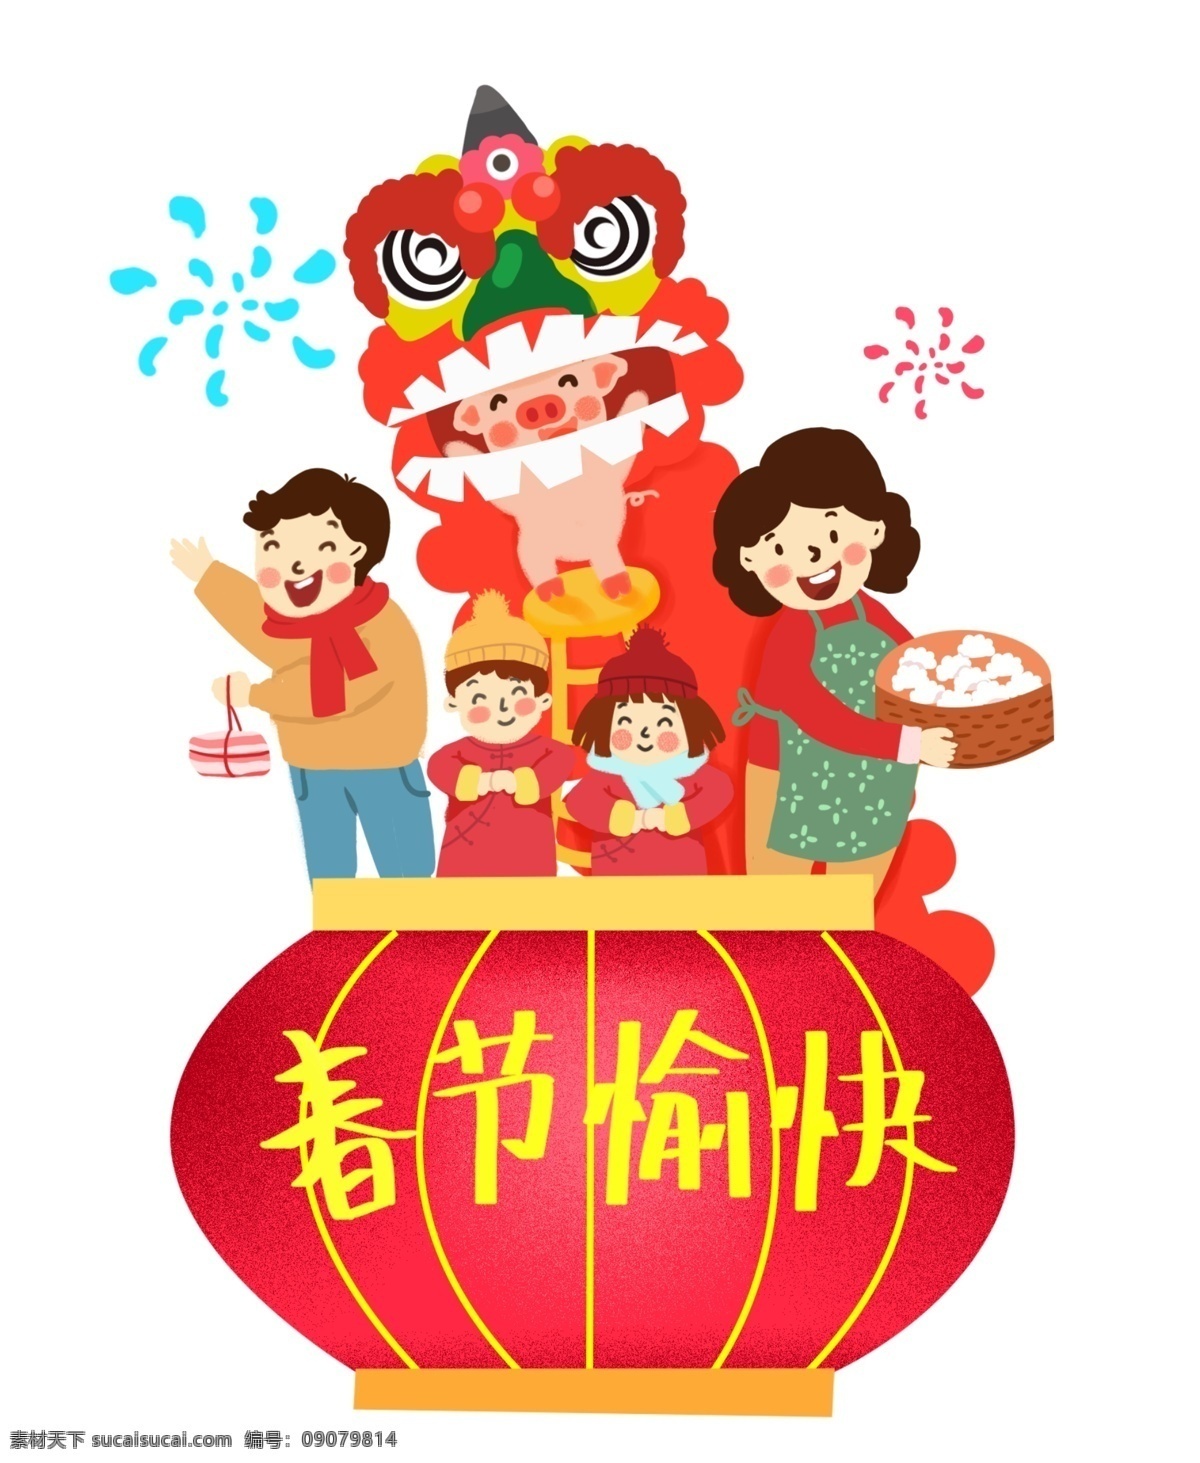 春节 卡通 手绘 暖 系 小 清新 风格 庆祝 一家人 卡通手绘 端 饺子 妈妈 拿着肉的爸爸 以及 拜年 哥哥 妹妹 舞狮子的小猪